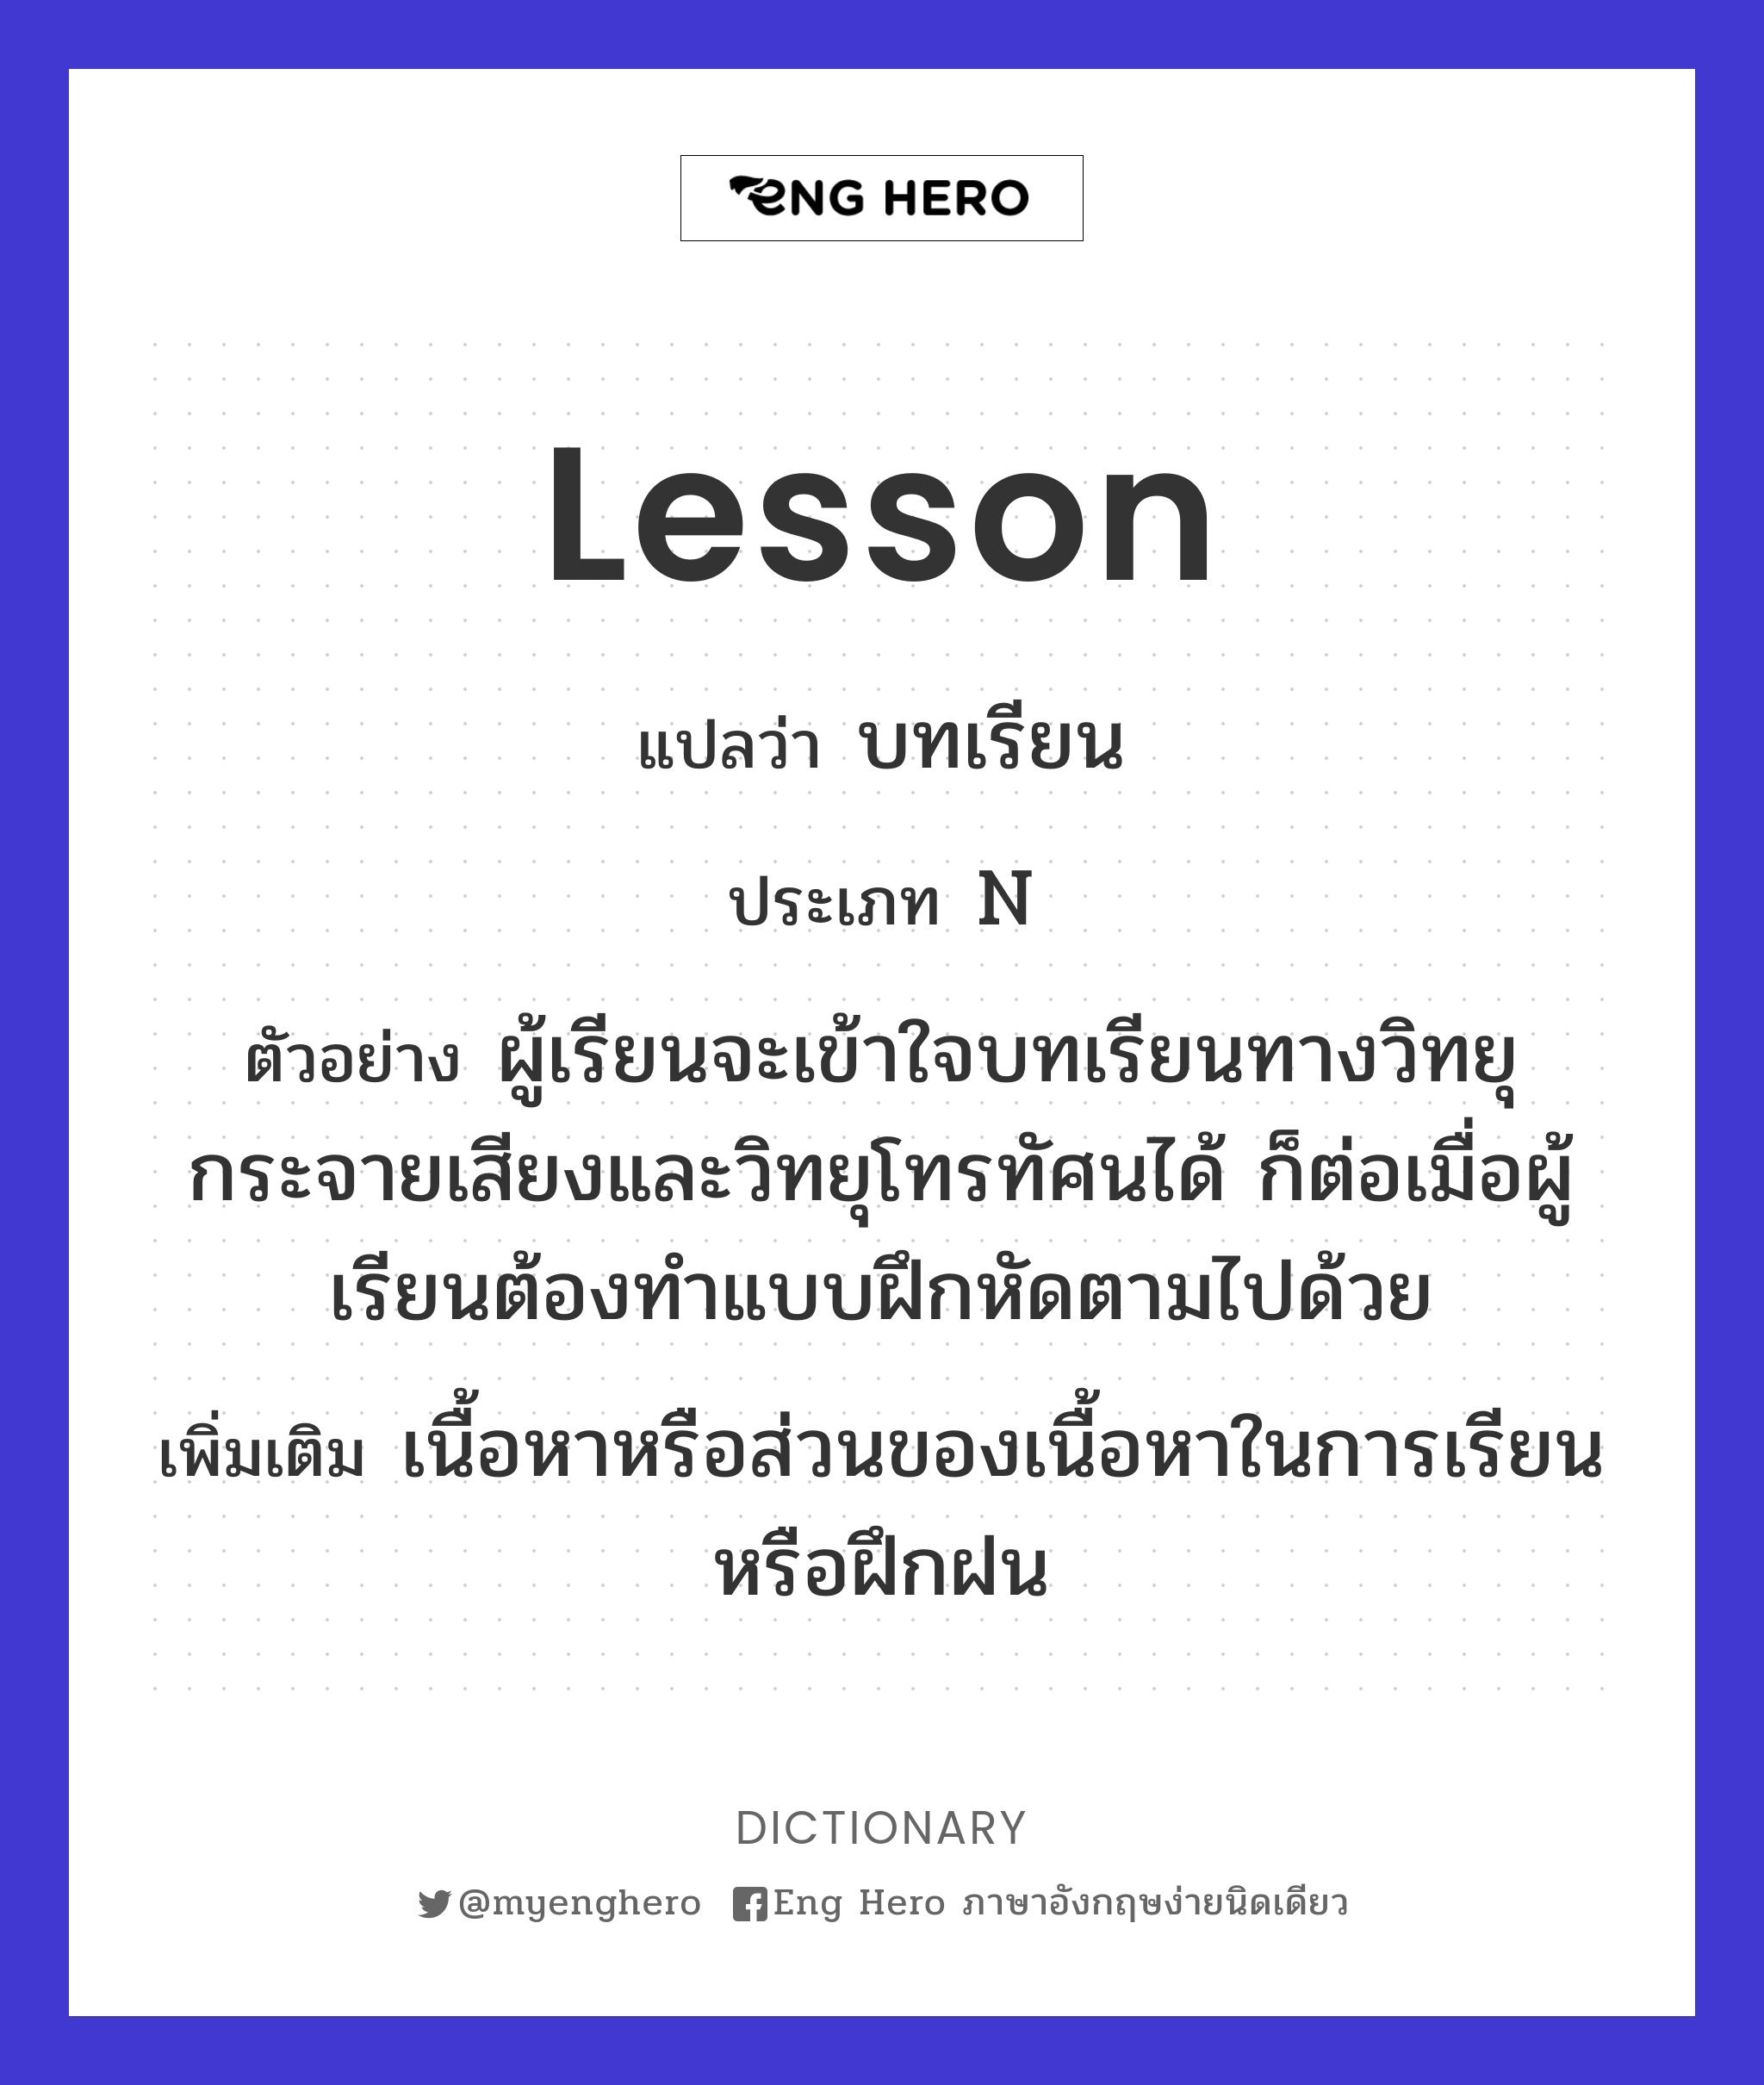 lesson